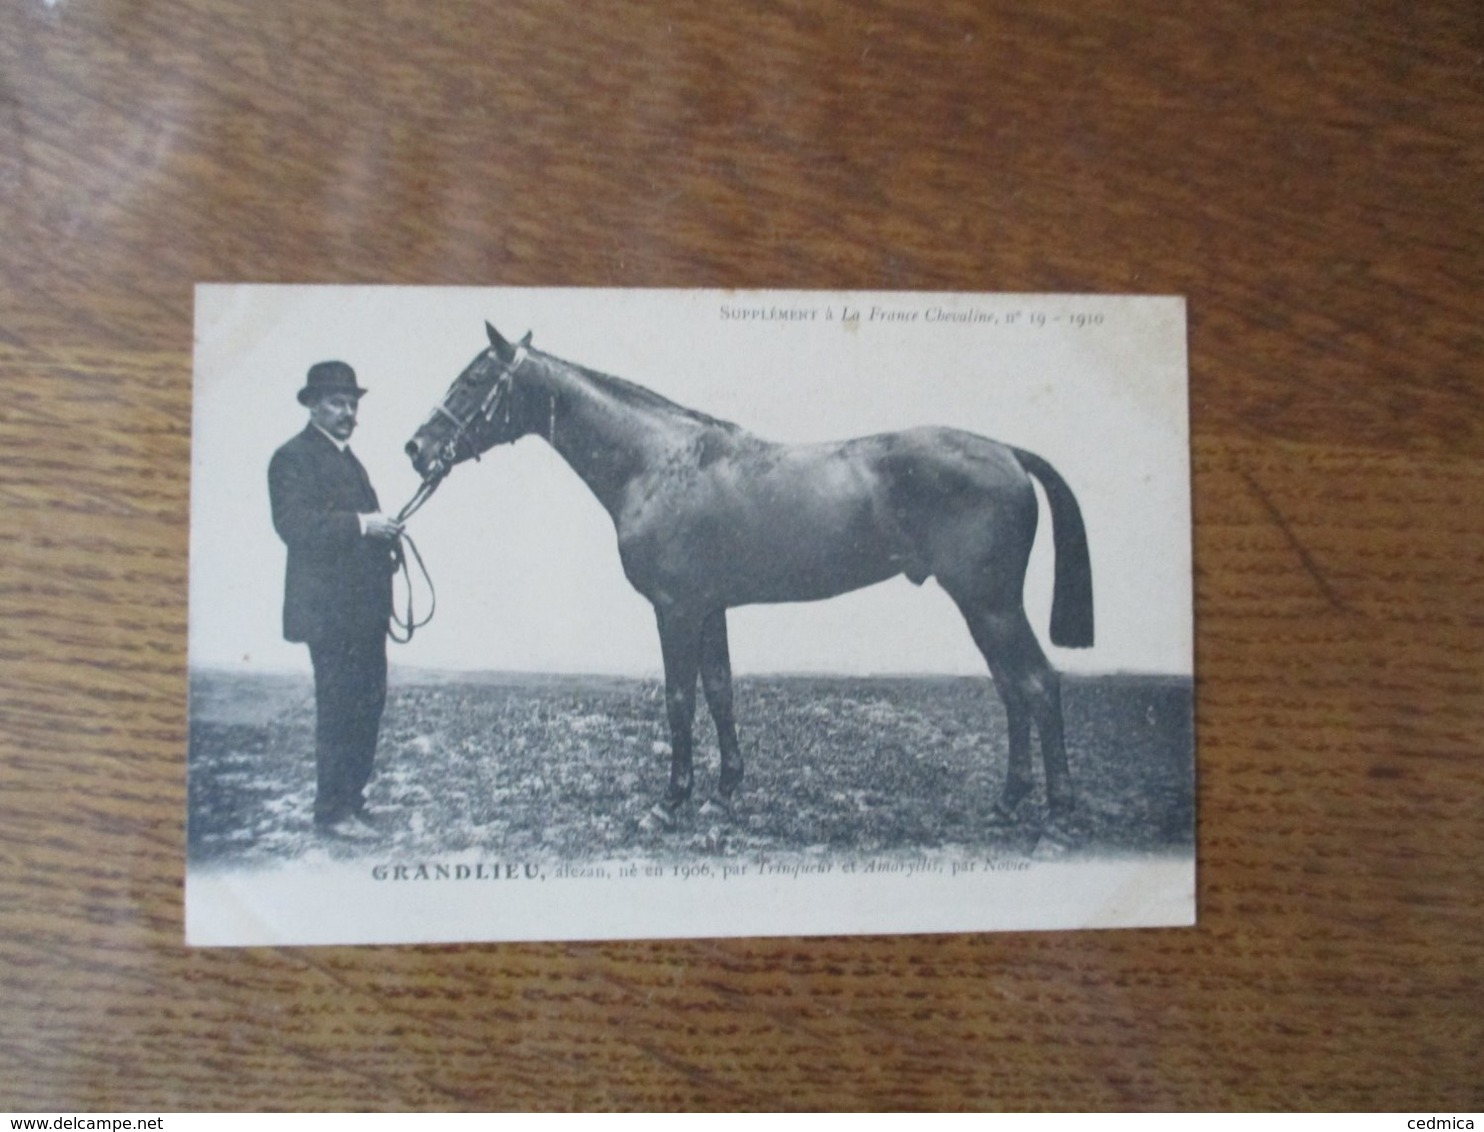 GRANDLIEU,ALEZAN,NE EN 1906,PAR TRINQUEUR ET AMARYLLIS,PAR NOVICE, SUPPLEMENT A LA FRANCE CHEVALINE N°19-1910 - Pferde